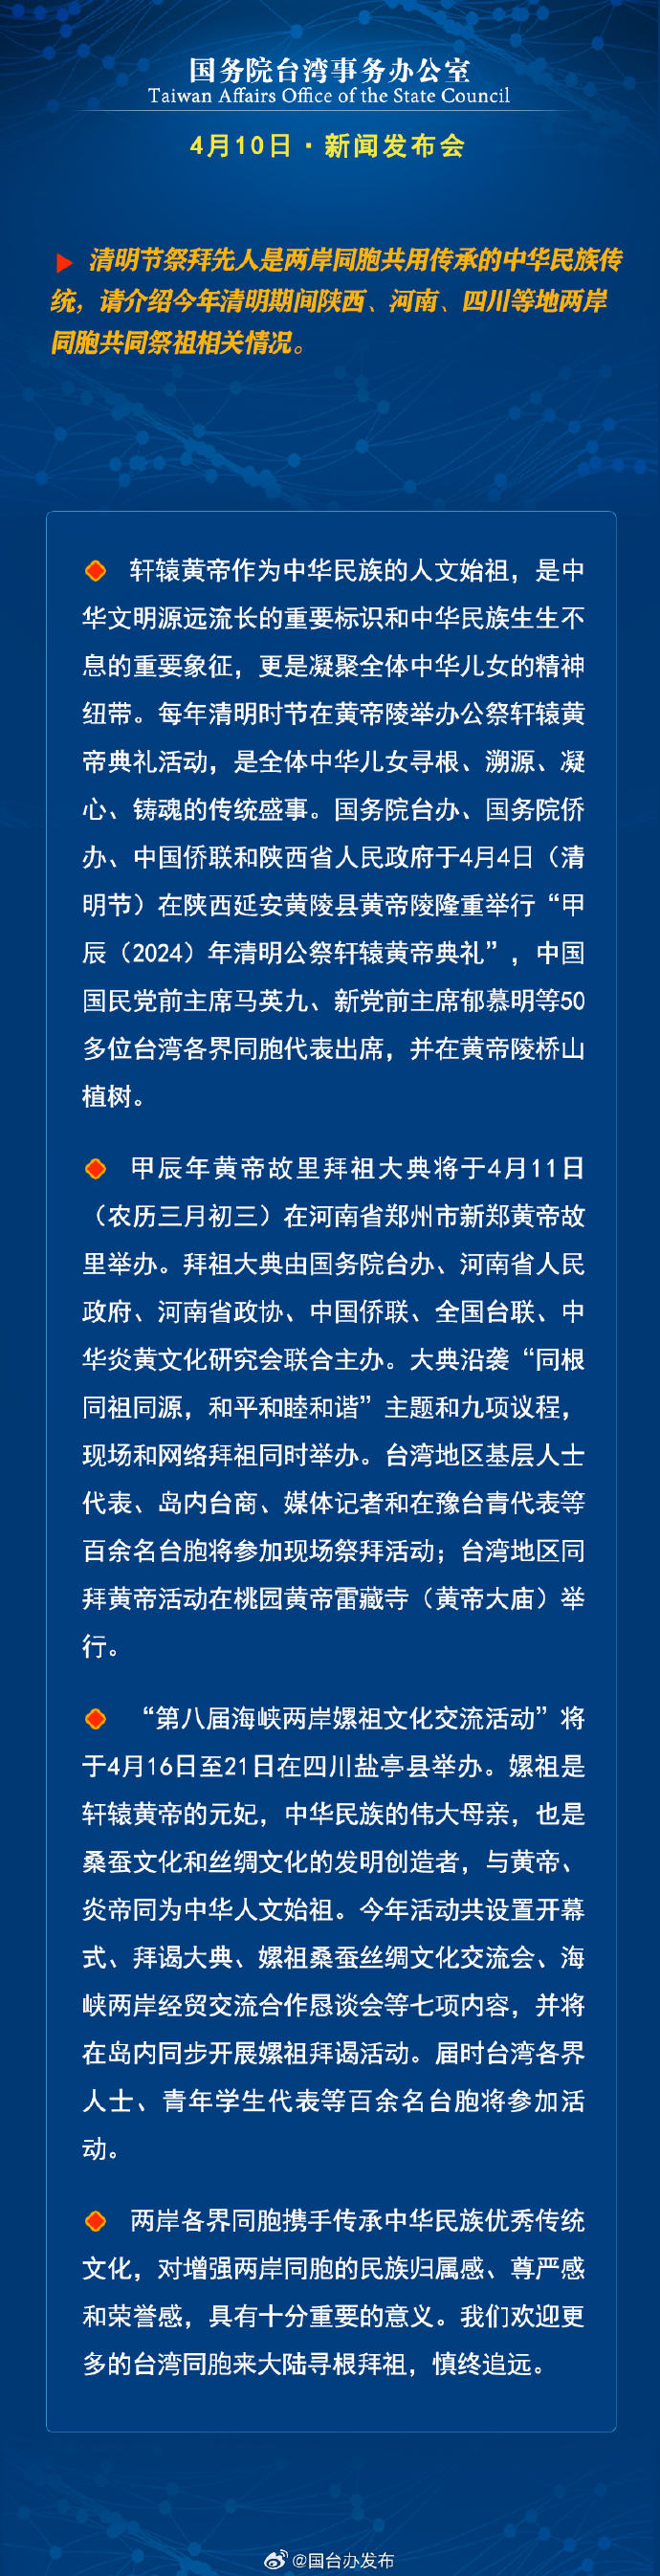 国务院台湾事务办公室4月10日·新闻发布会